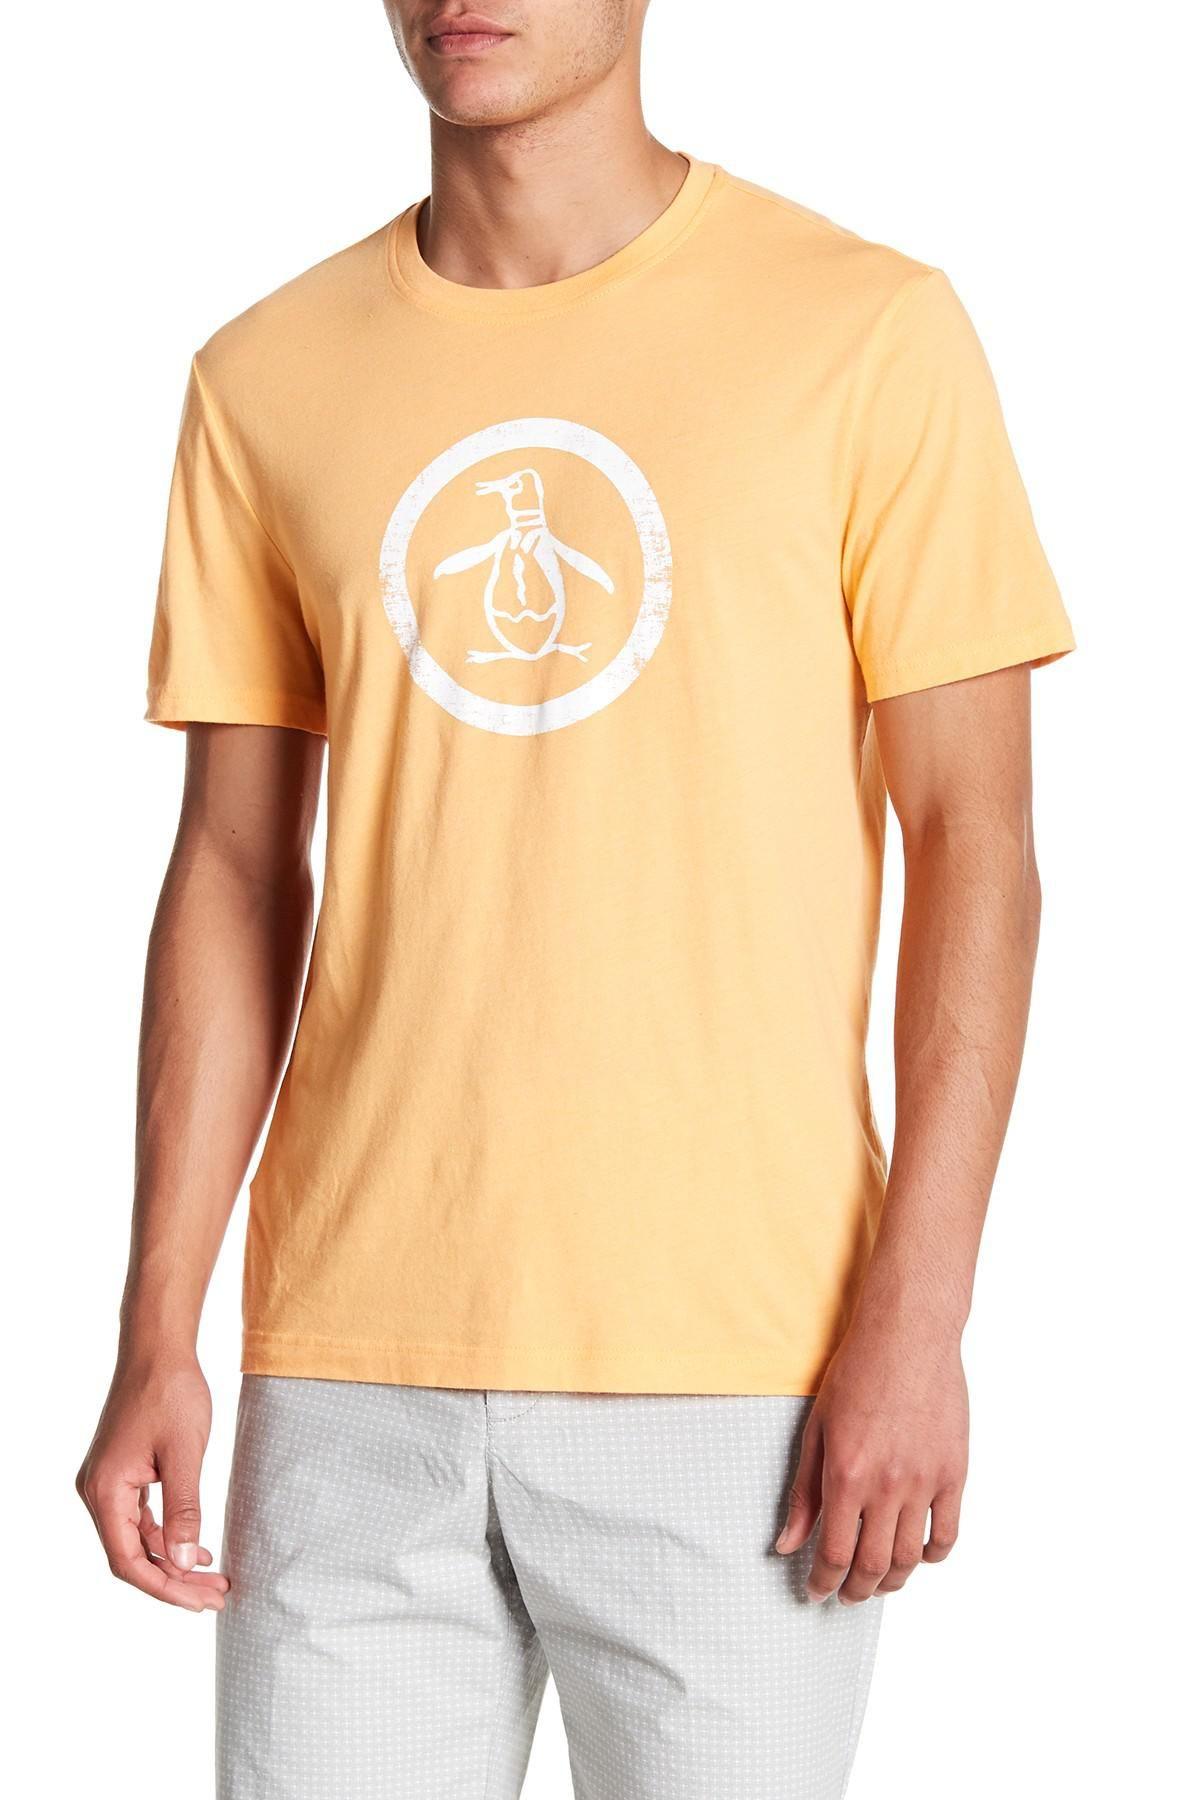 Penguin in Orange Circle Logo - Lyst - Original Penguin Circle Logo T-shirt in Orange for Men